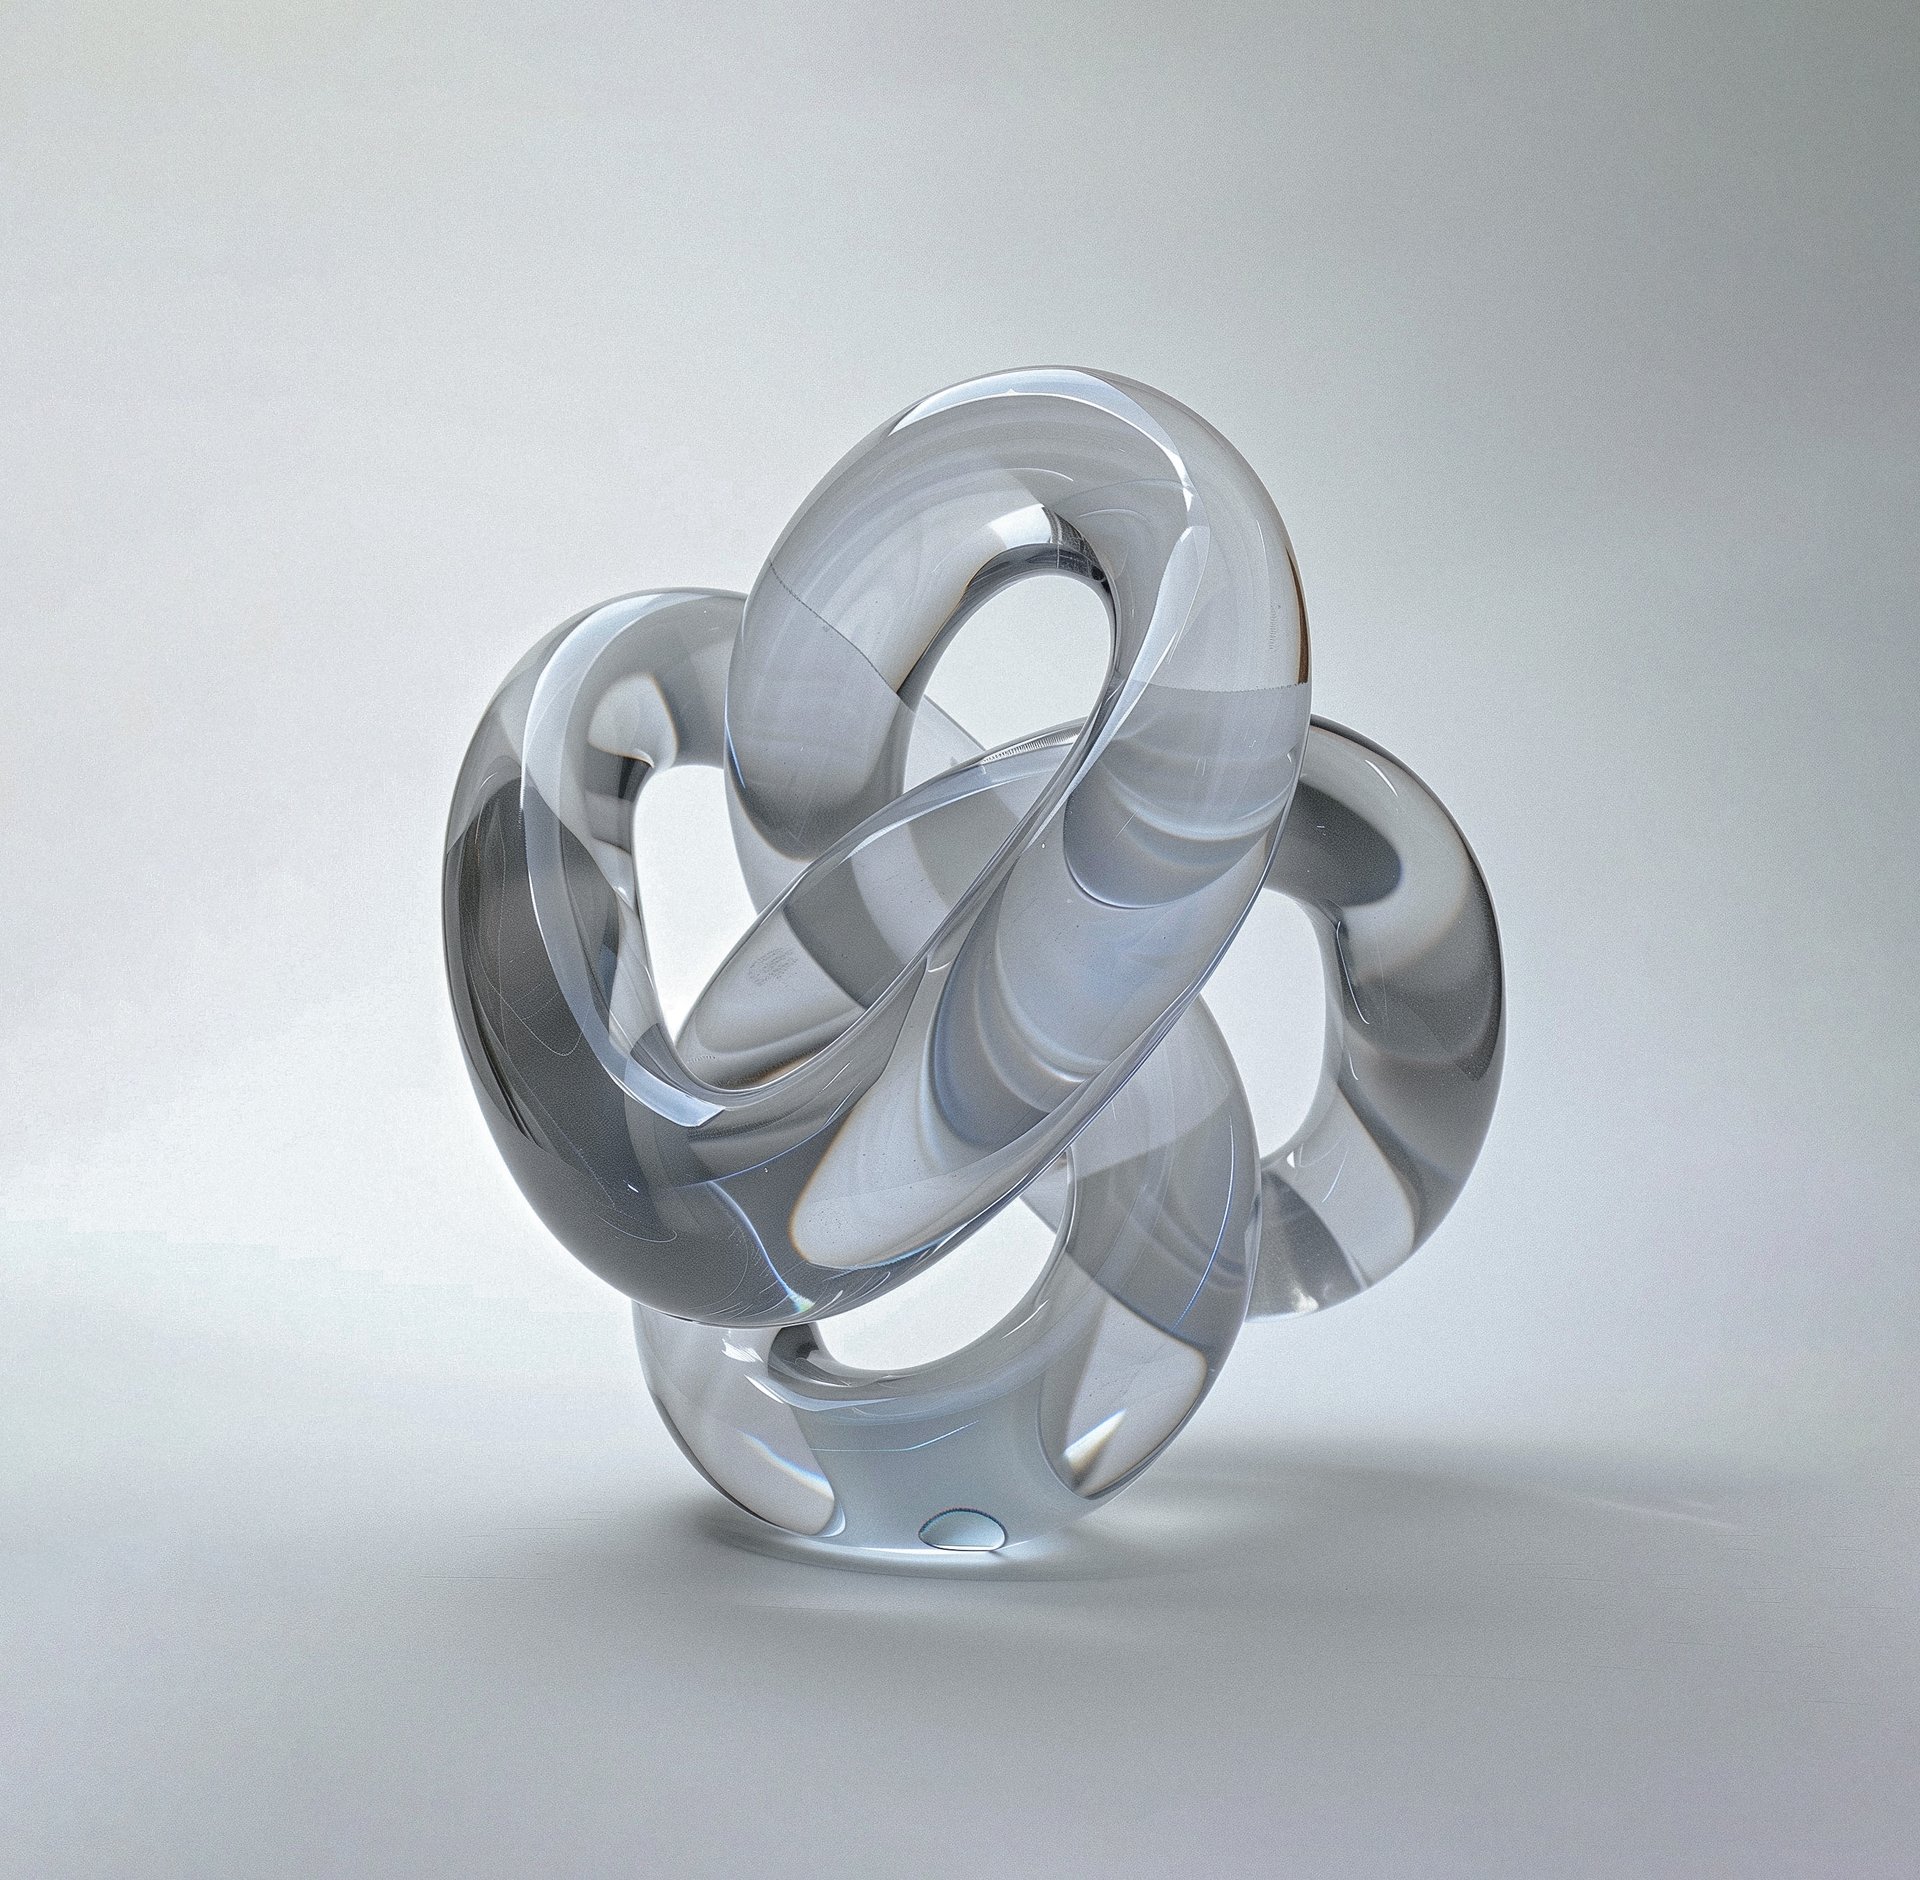 Glass sculpture of an interlacing knot